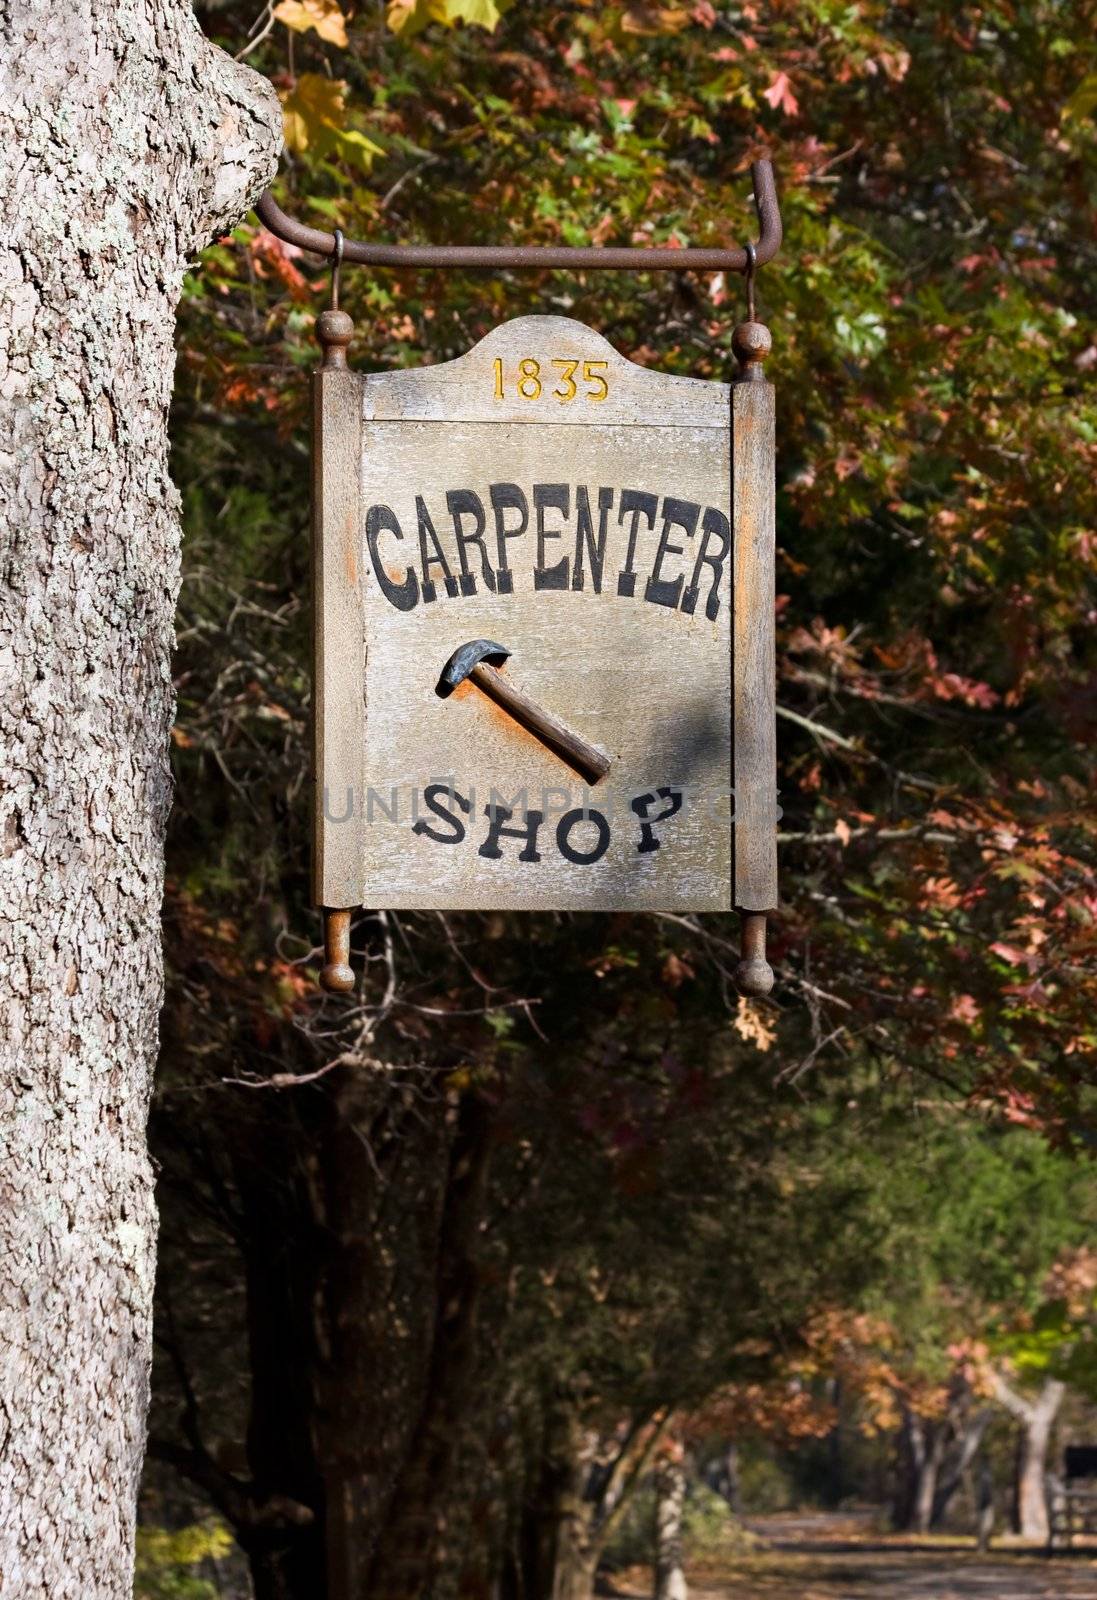 Carpenter Shop Sign by sbonk